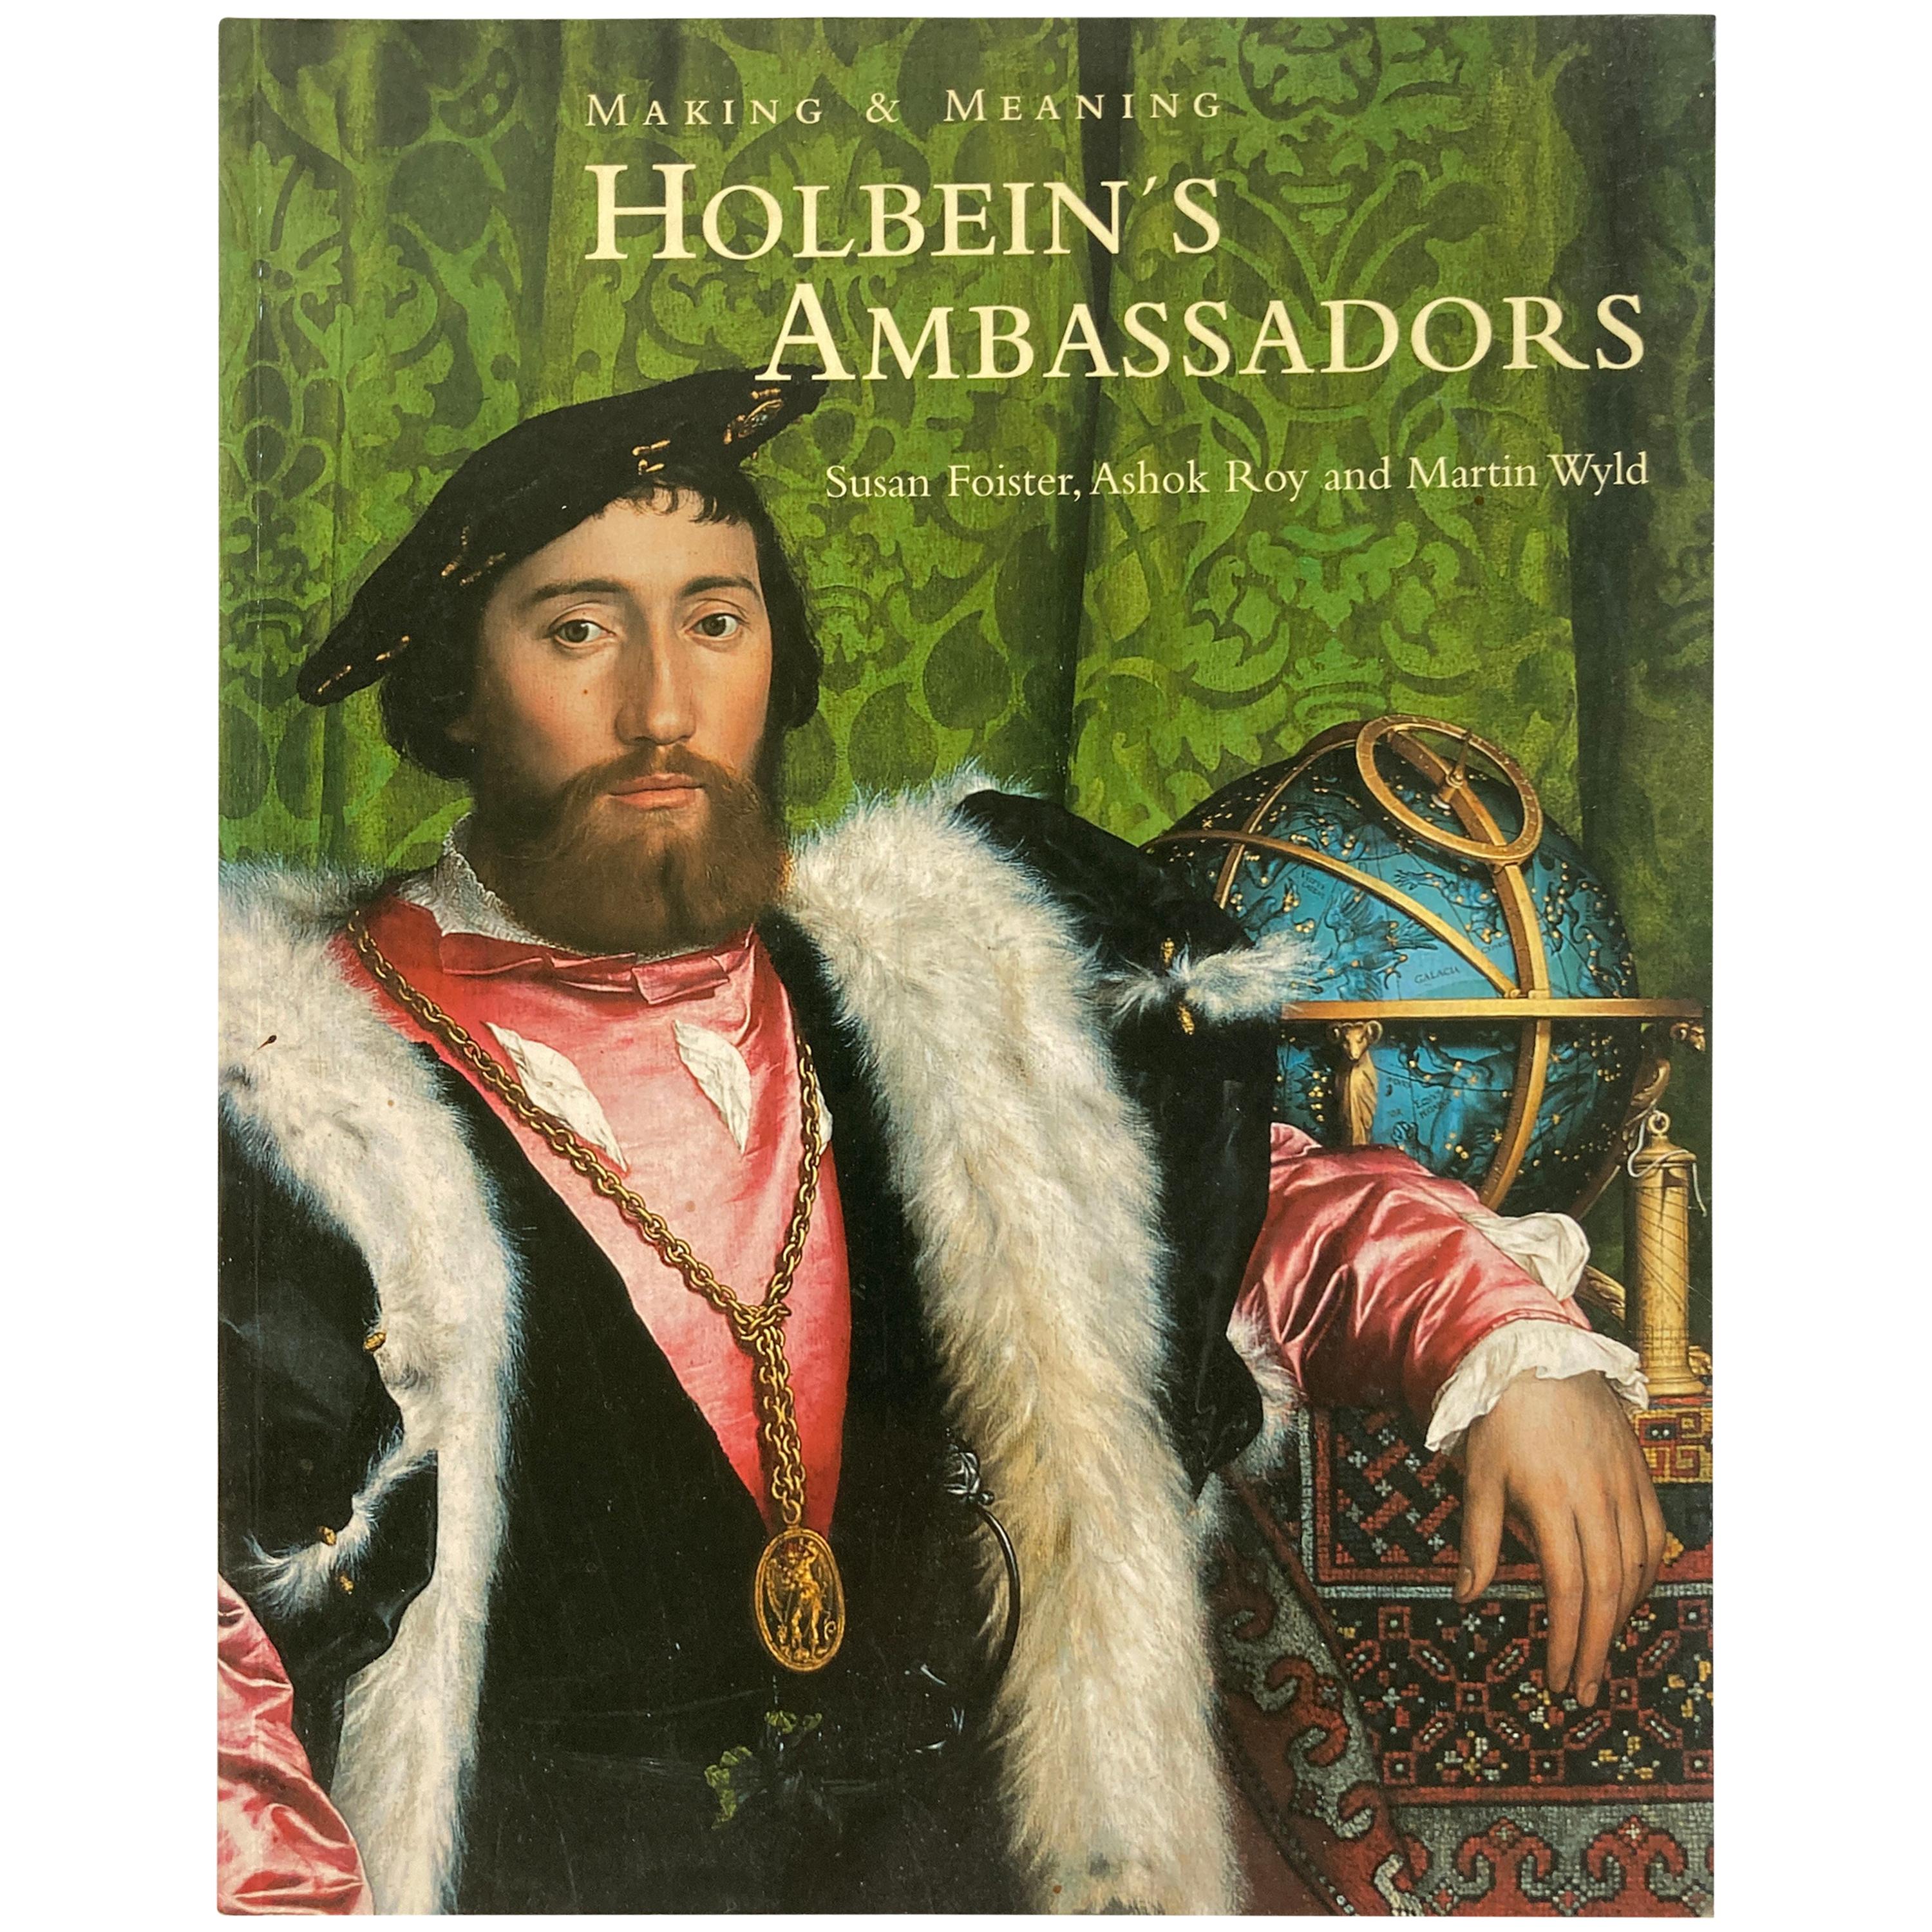 Création et signification  Livre d'ambassadeurs de Holbein